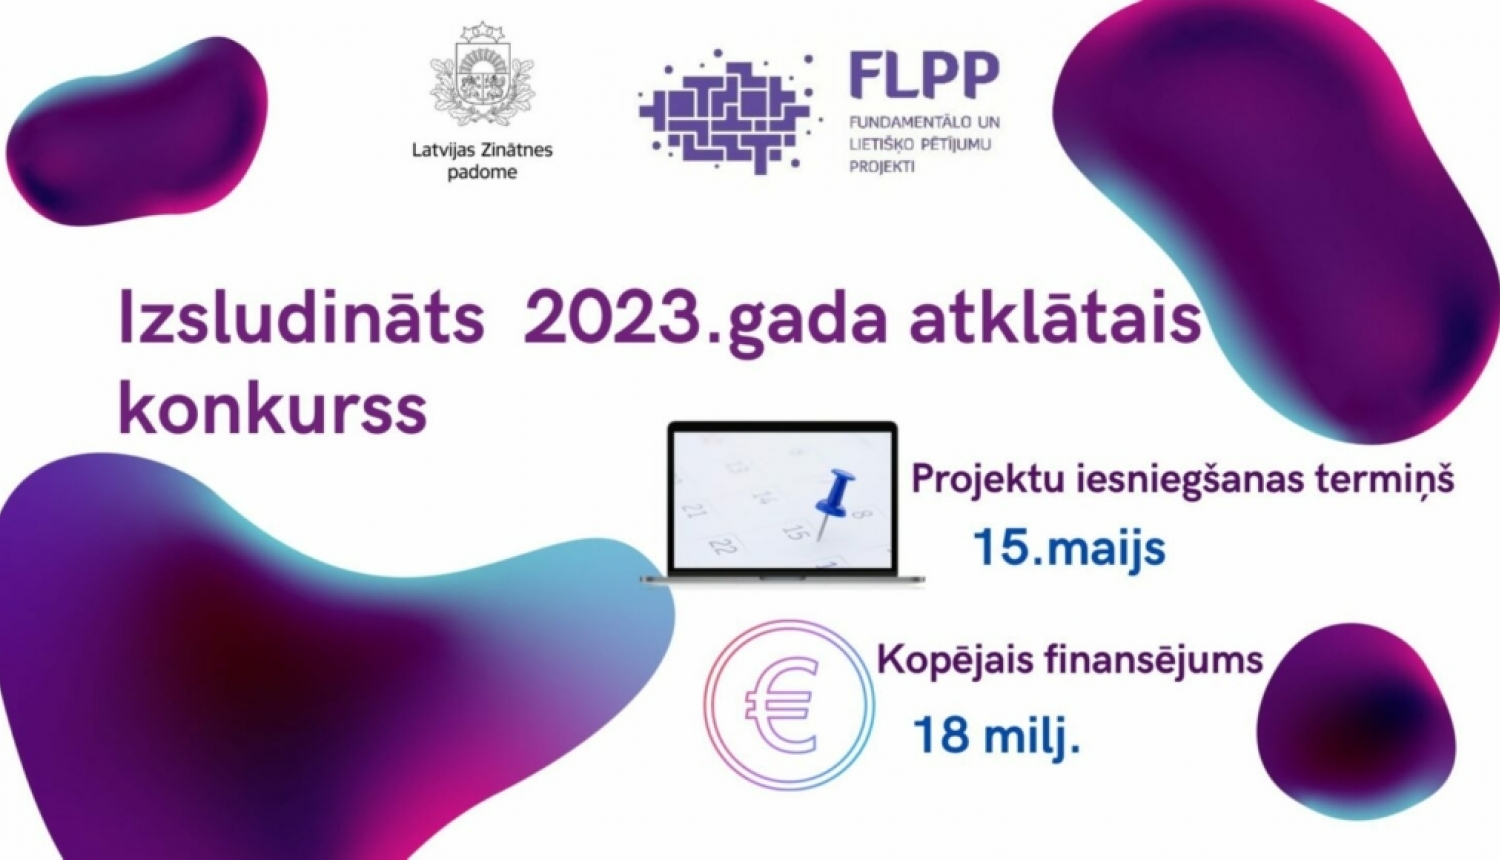 Latvijas Zinātnes padome izsludina fundamentālo un lietišķo pētījumu projektu 2023. gada atklāto konkursu